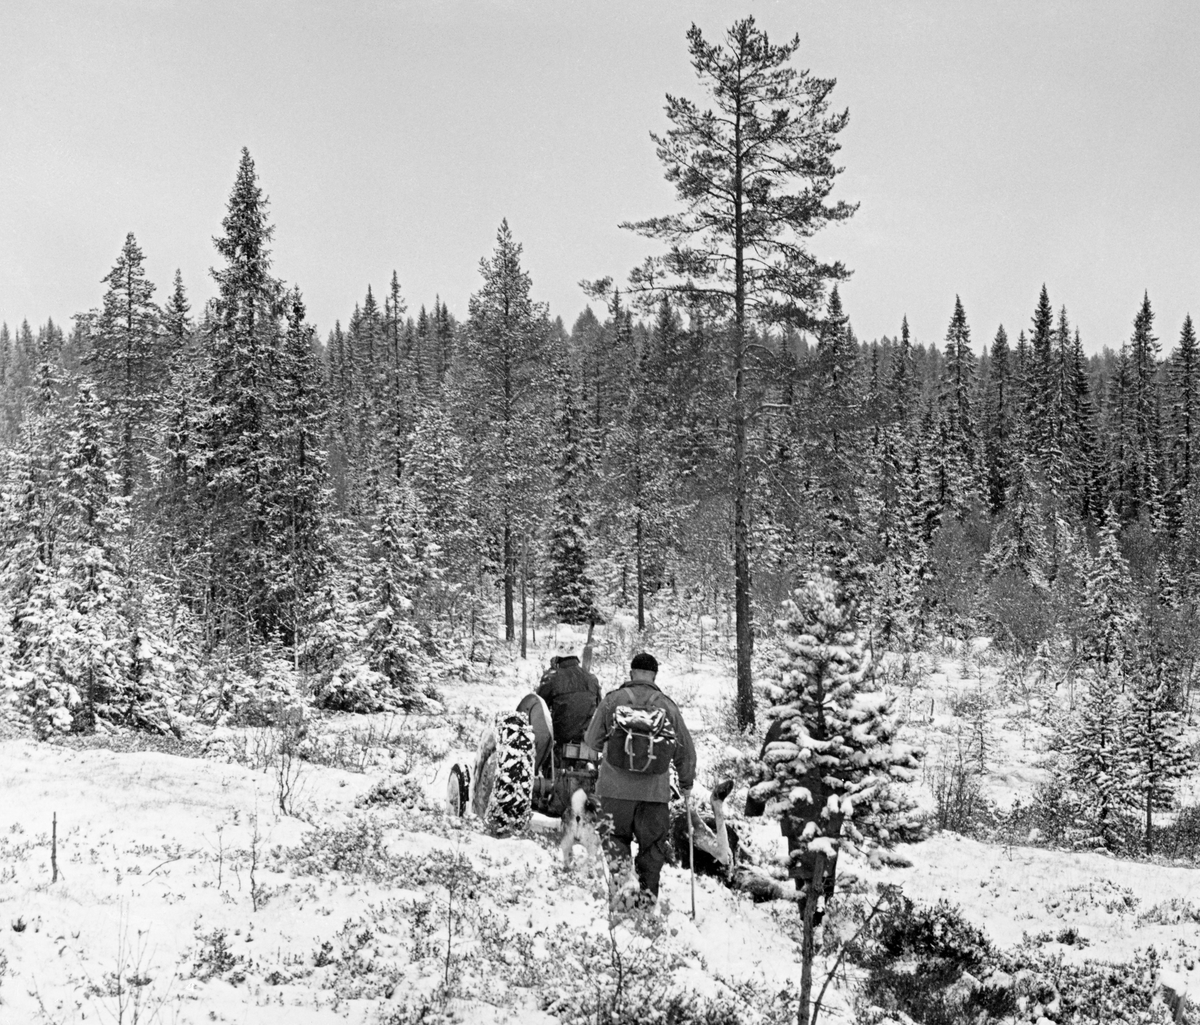 Transport av utvommet elgskrott i Fjerdingsåsen i Slemdalen i Nordre Osen (Åmot i Hedmark) 3. oktober 1977.  Elgen slepes bak en Ferguson-traktor («Gråtass») på snødekt mark.  Traktoren, som ble kjørt av en ung mann ved navn Geir, var utstyrt med kjettinger på bakhjulene.  En av jegerne, Andreas Eggen, vandrer bak slepet med sekk på ryggen og stav i handa.  Akkurat der fotografiet ble tatt gikk traktoren gjennom forholdsvis åpent lende, men framfor den sto barskogen tett.  Elgjakt. Storviltjakt. Jegere. Elgjegere.